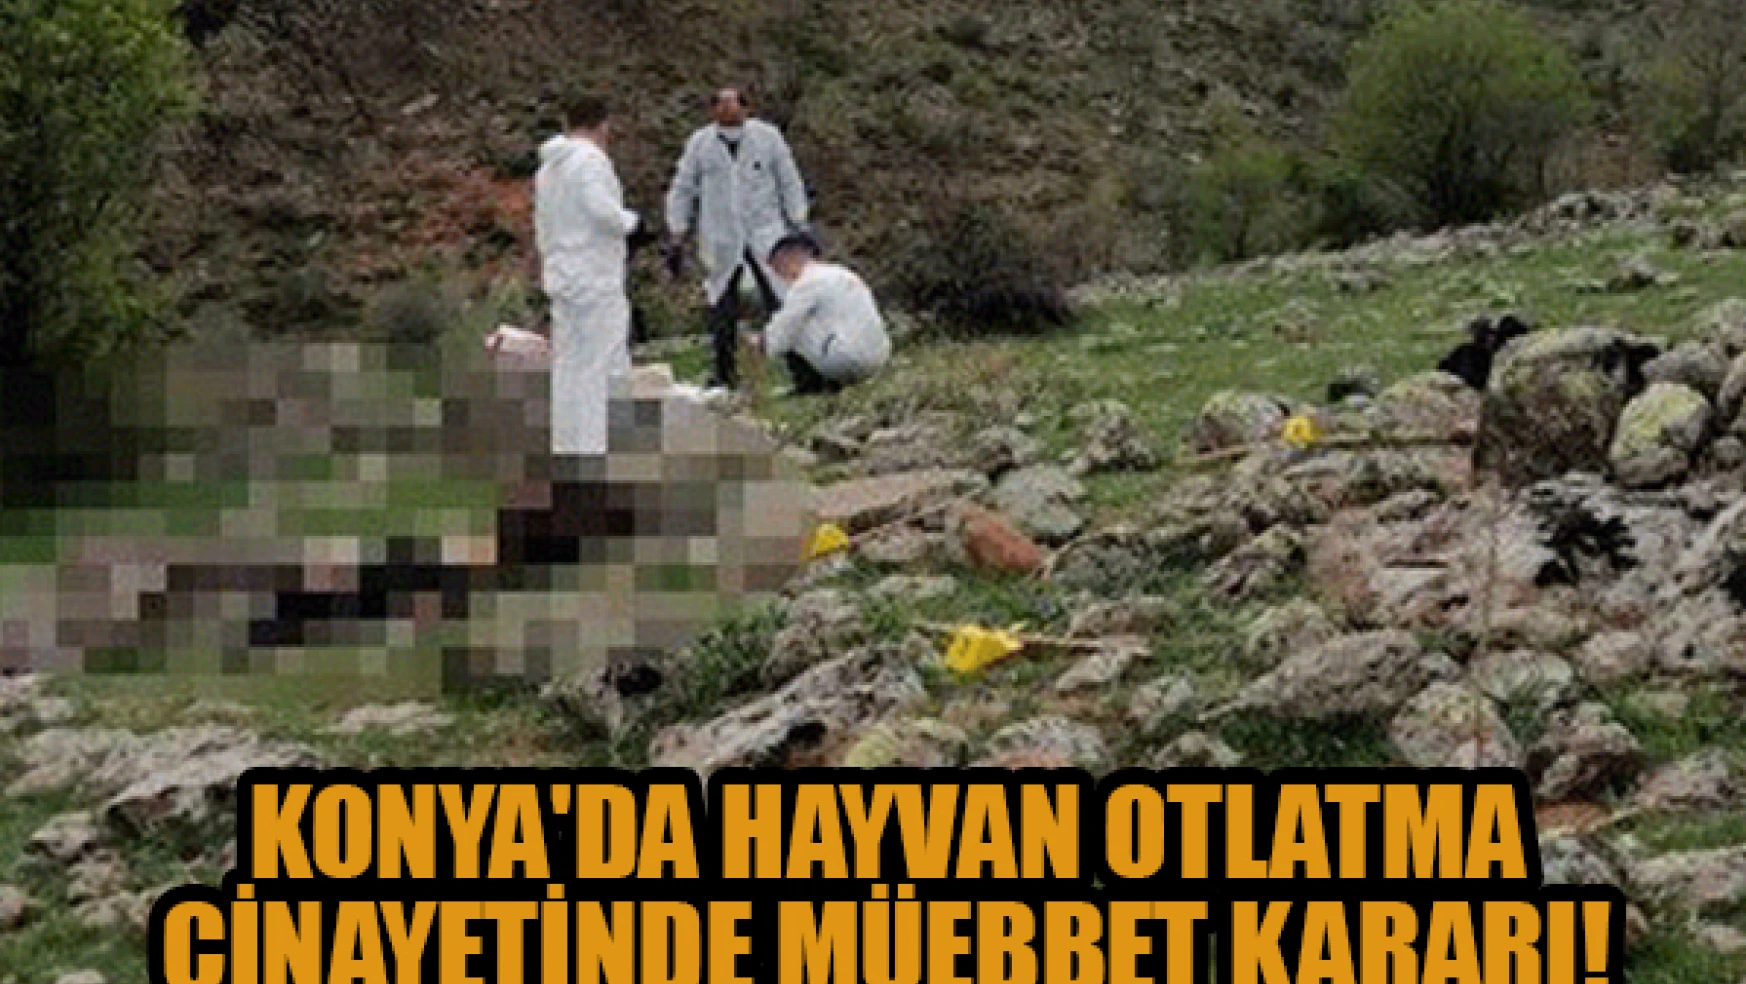  Konya'da hayvan otlatma cinayetinde müebbet kararı!